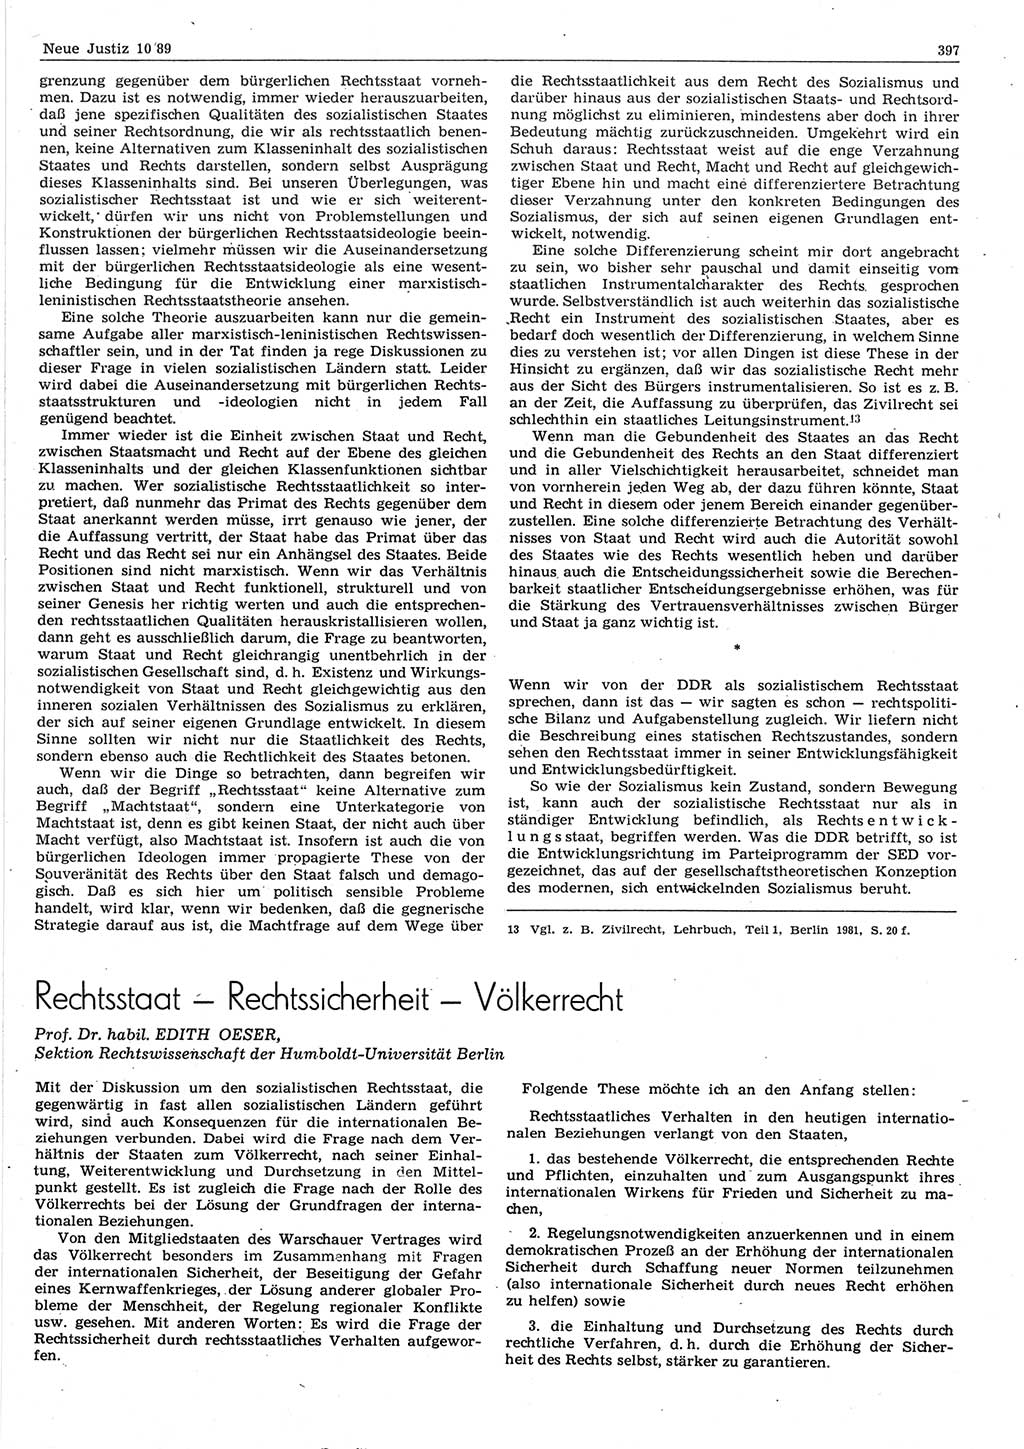 Neue Justiz (NJ), Zeitschrift für sozialistisches Recht und Gesetzlichkeit [Deutsche Demokratische Republik (DDR)], 43. Jahrgang 1989, Seite 397 (NJ DDR 1989, S. 397)